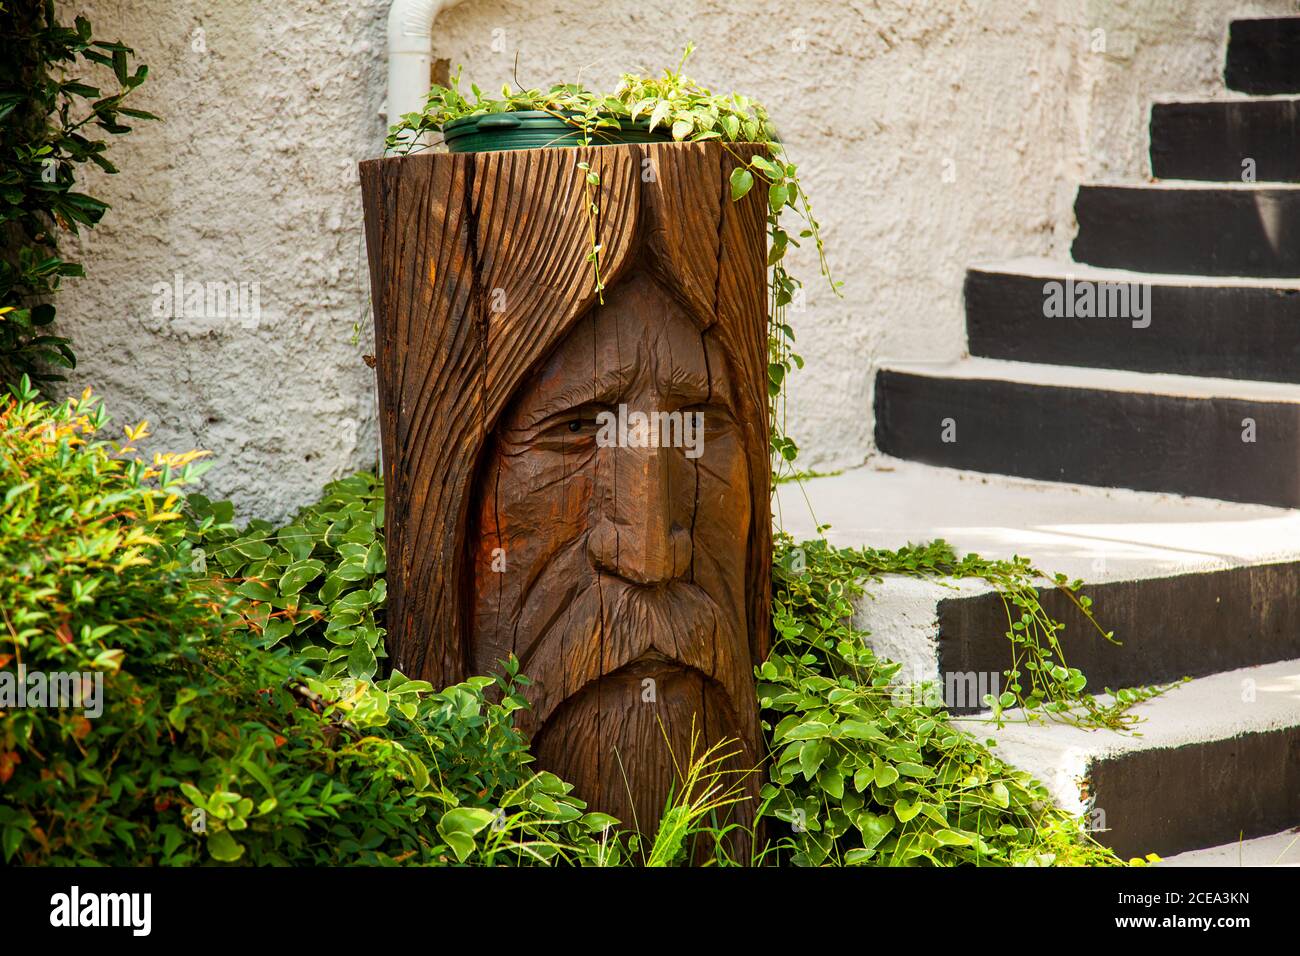 Annapolis, MD 08/21/2020: Ein Garten mit Steintreppe und Holzbalken als Topfhalter. Das Holz ist in den Eindruck eines alten Mannes geschnitzt Stockfoto